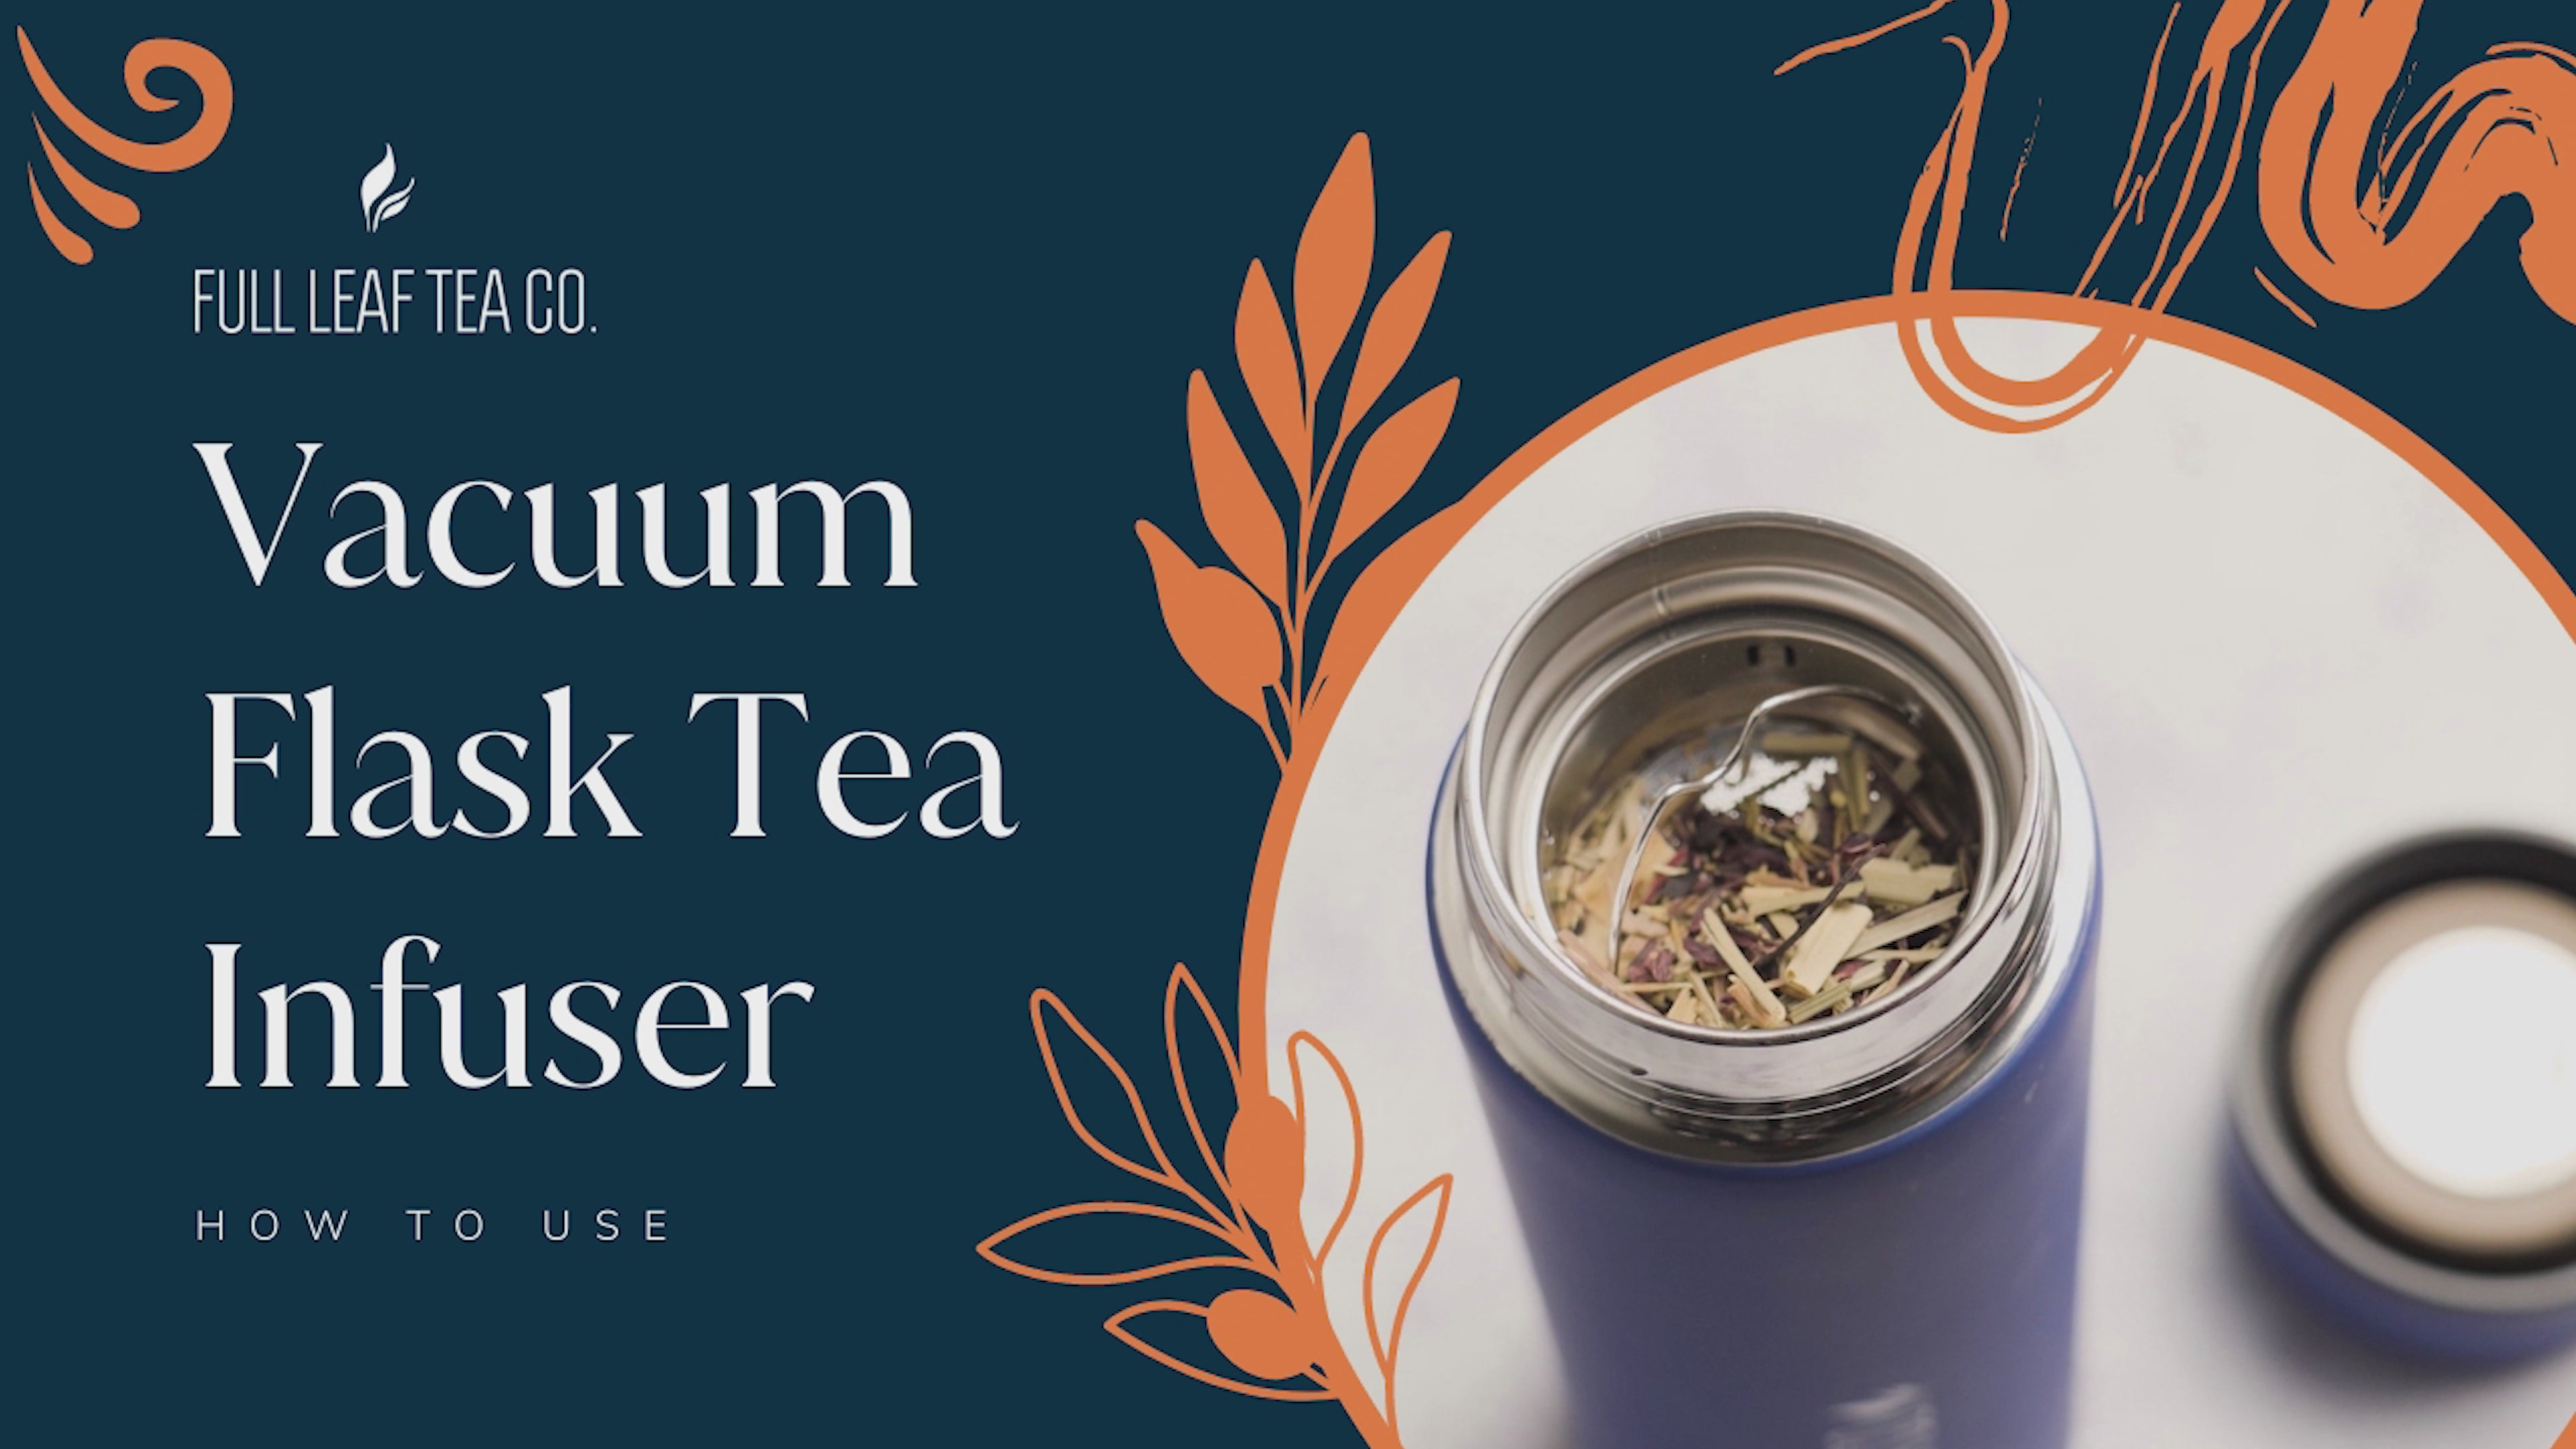 Full Leaf Vacuum Flask Tea Infuser-2